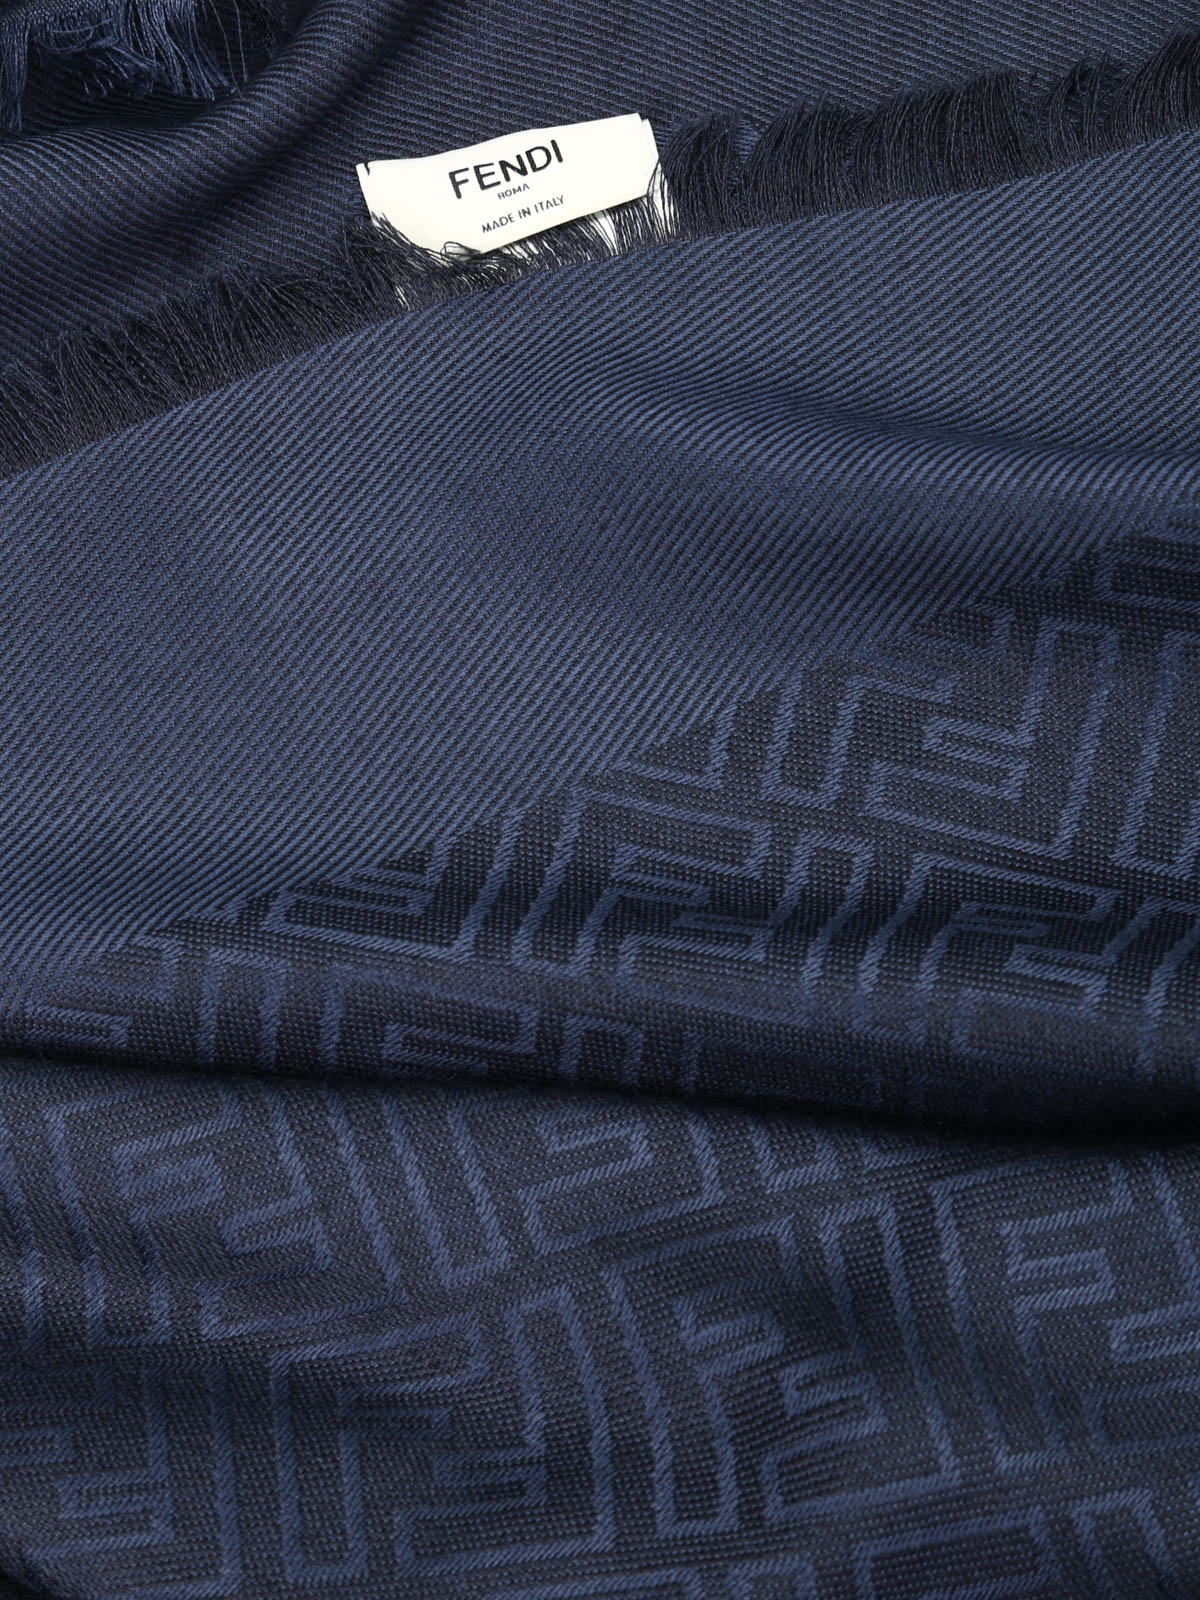 Stoles & Shawls Fendi - FF print silk and wool shawl - FXT9249EAF0QA2